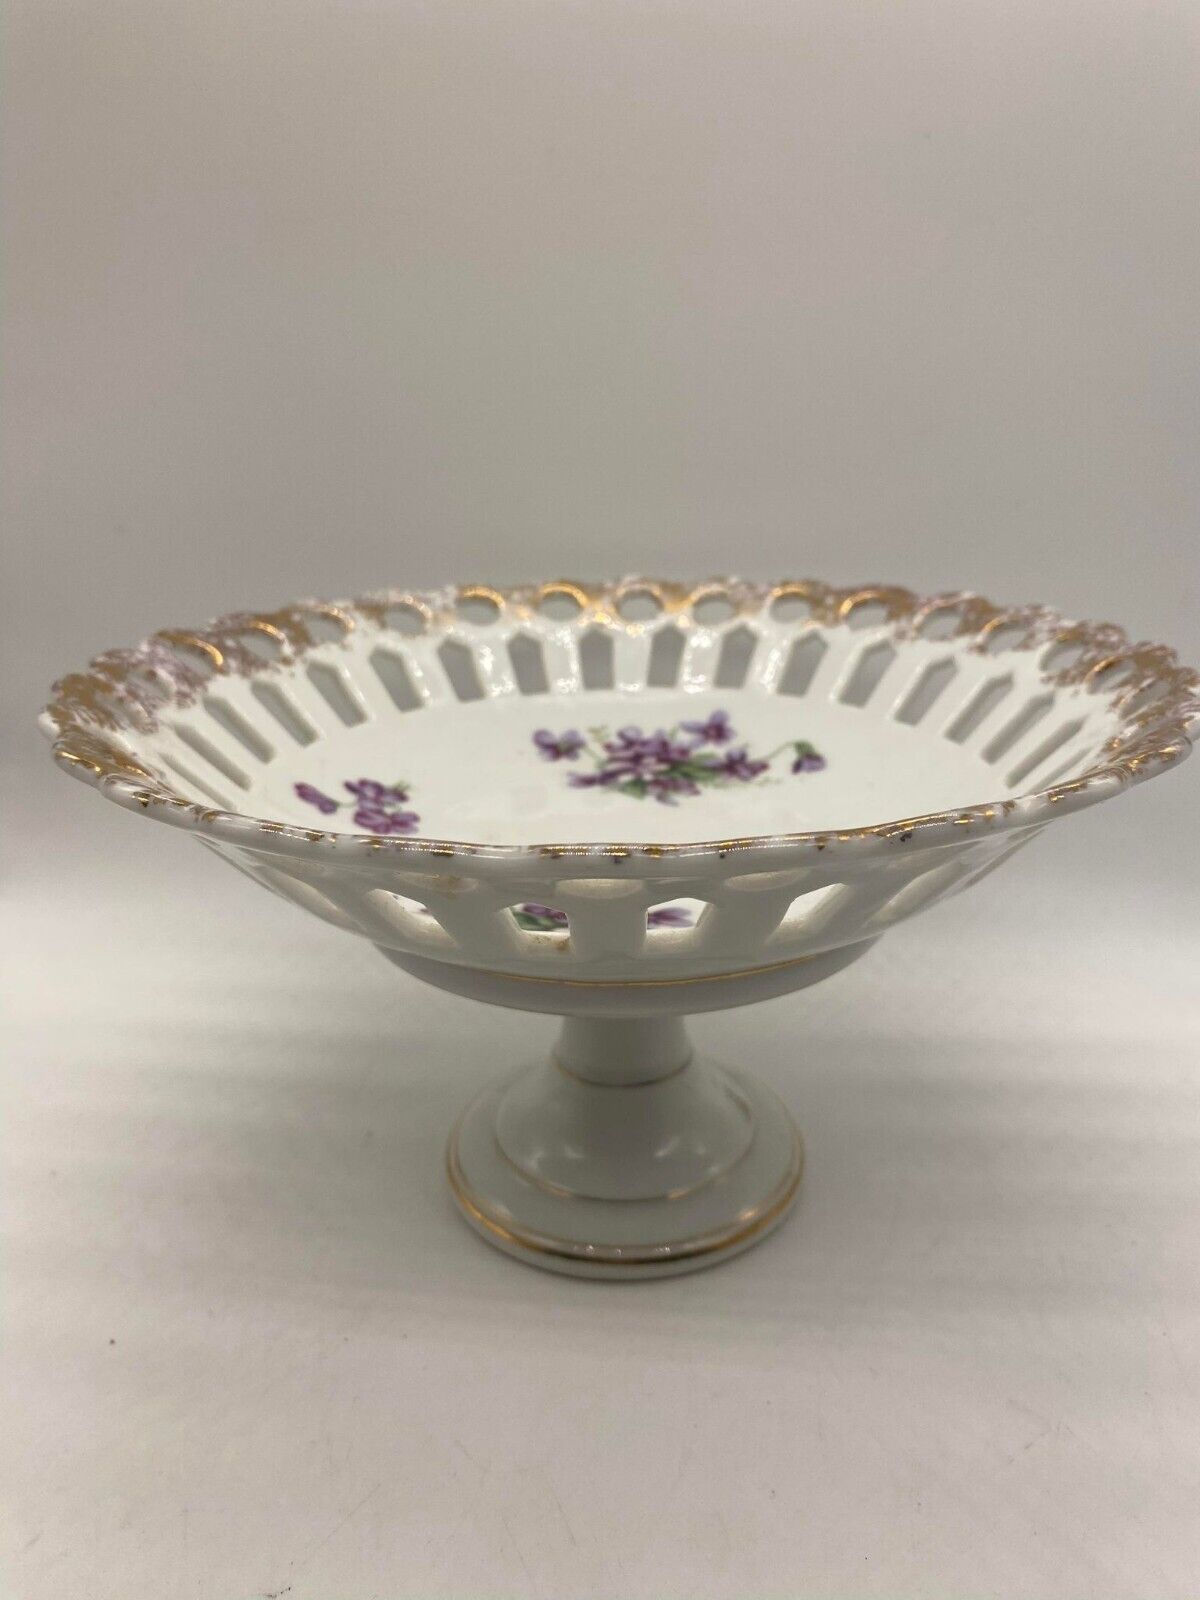 Vintage Royal Sealy White Porcelain Pedestal Bowl with Violets - $14.85